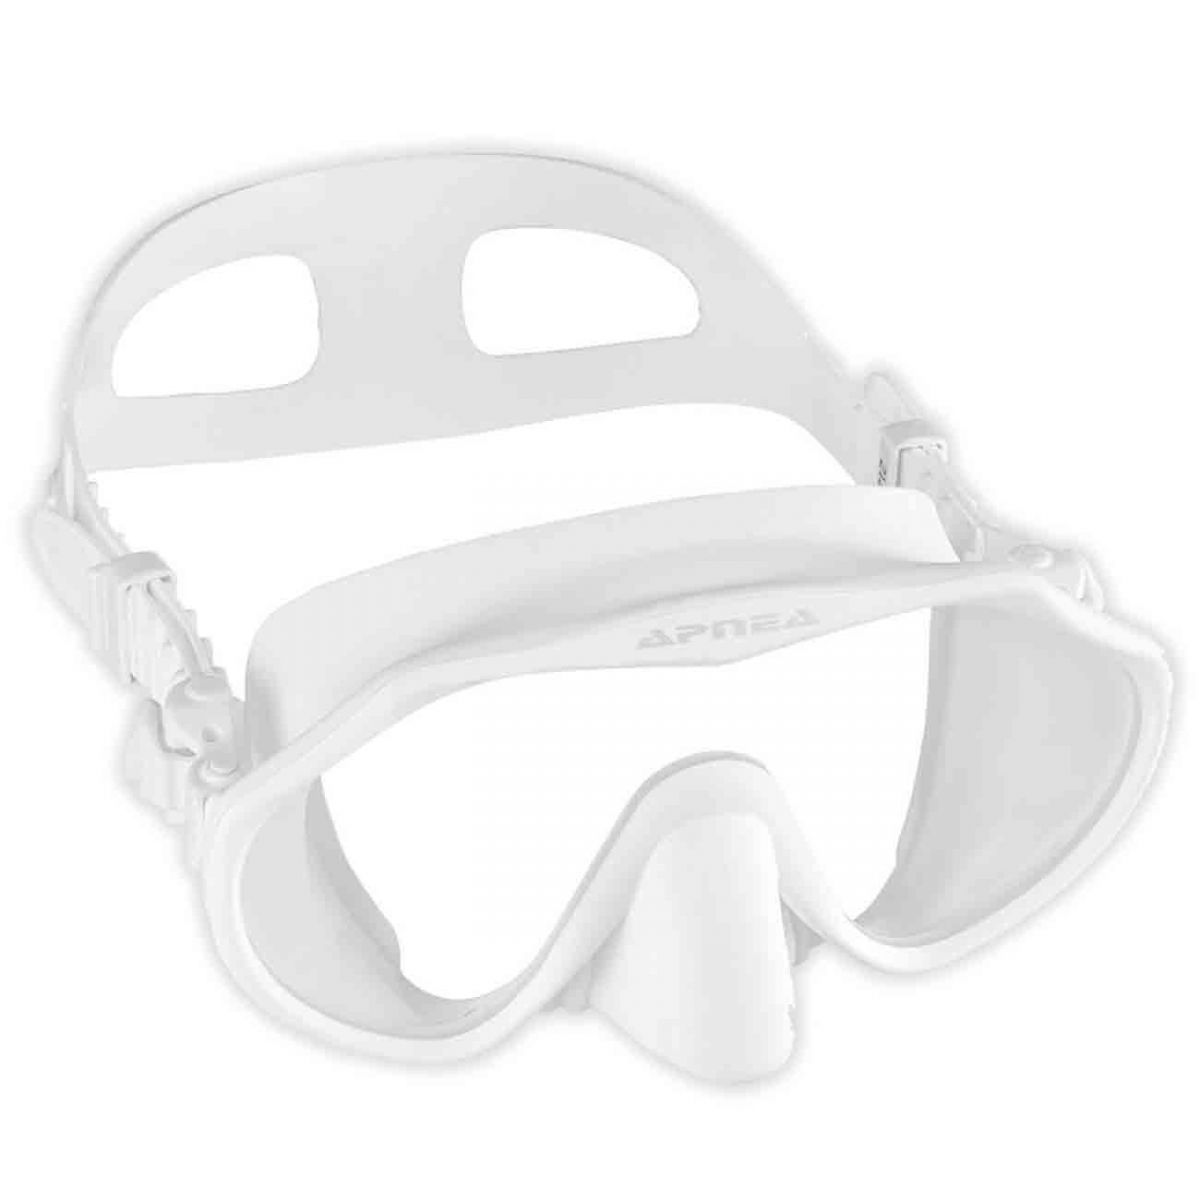 Apnea Discovery Beyaz Dalış Maskesi,Apnea kalitesinde uzun yıllar kullanabileceğiniz dalış maskesi